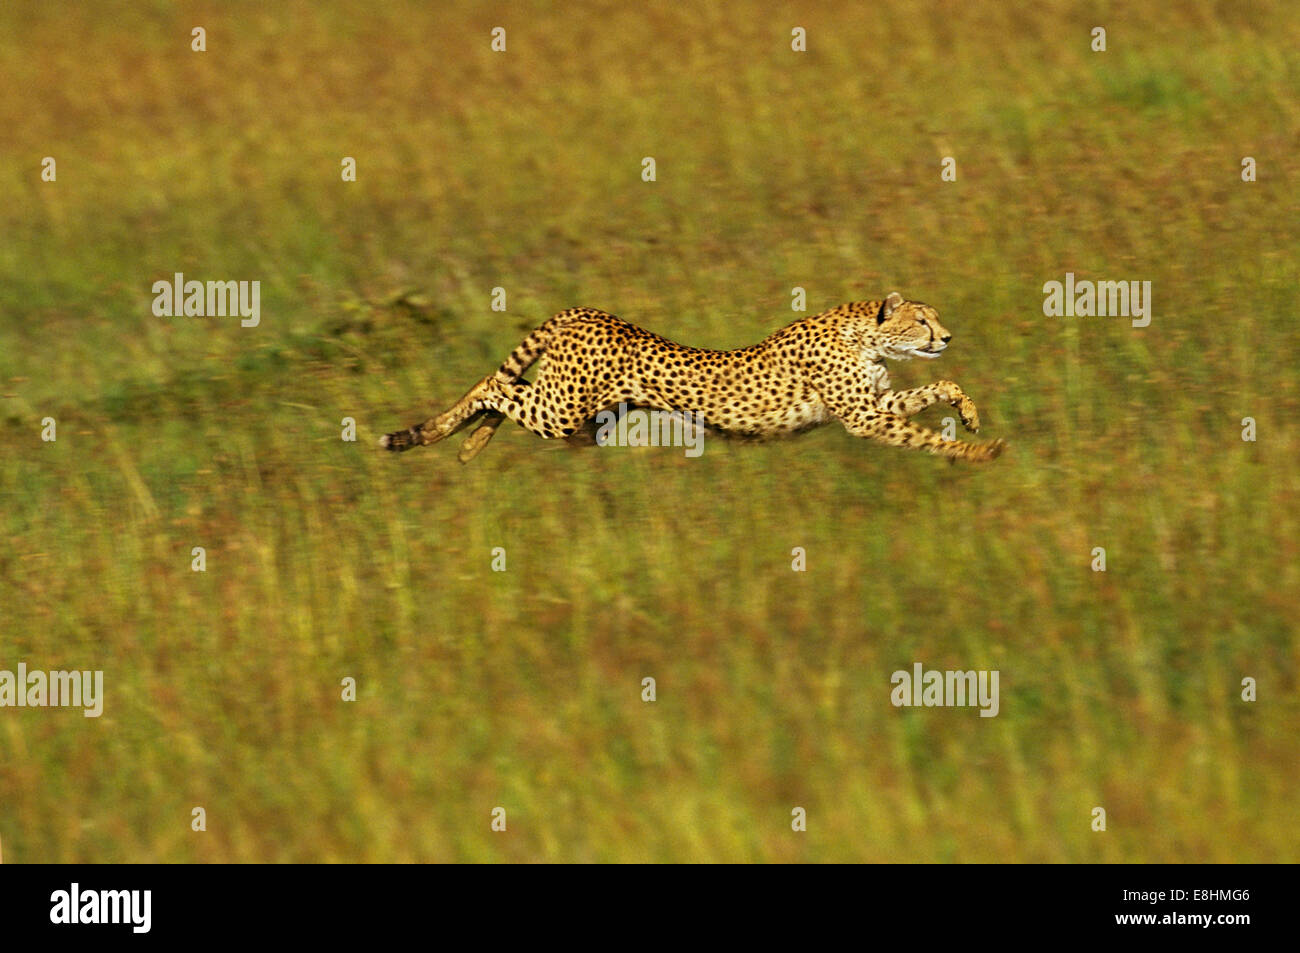 Cheetah running full speed Stock Photo